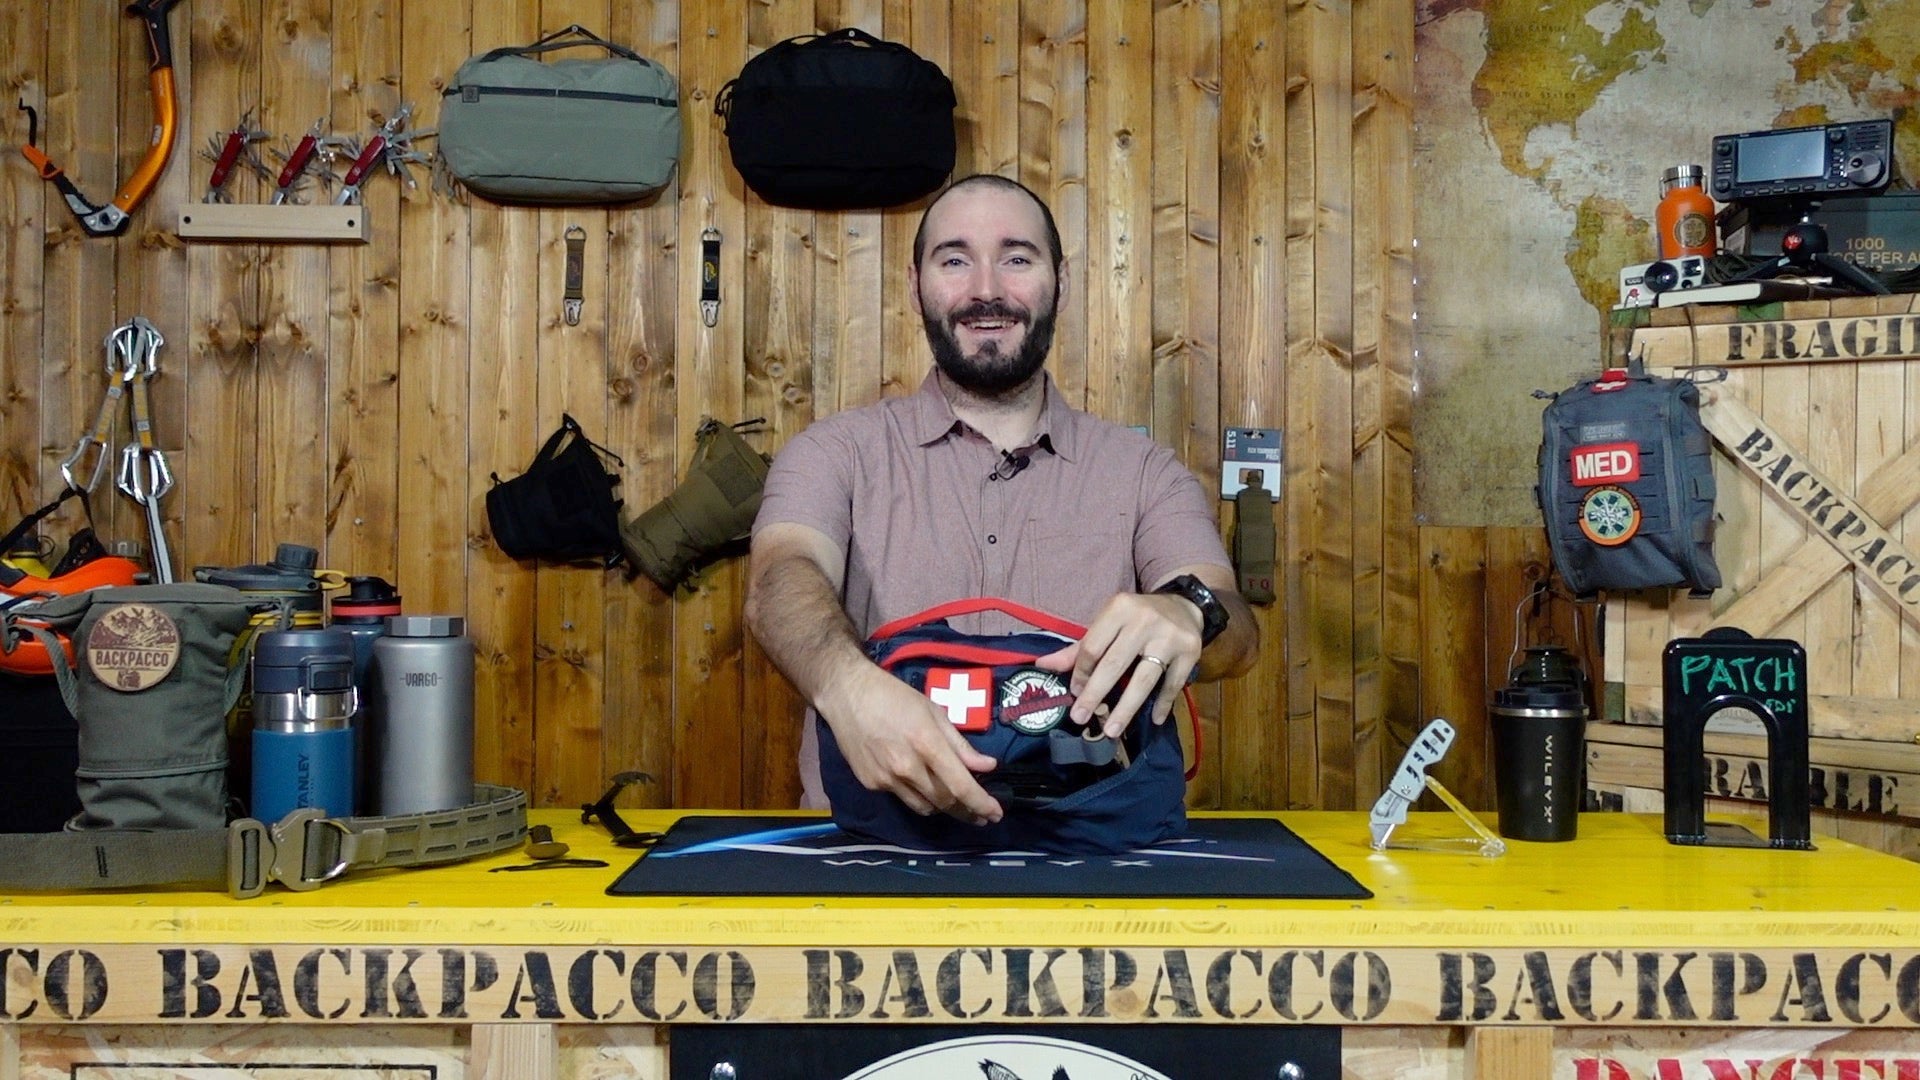 Paolo di Backpacco spiega la EMERGENCY READY BAG di 5.11